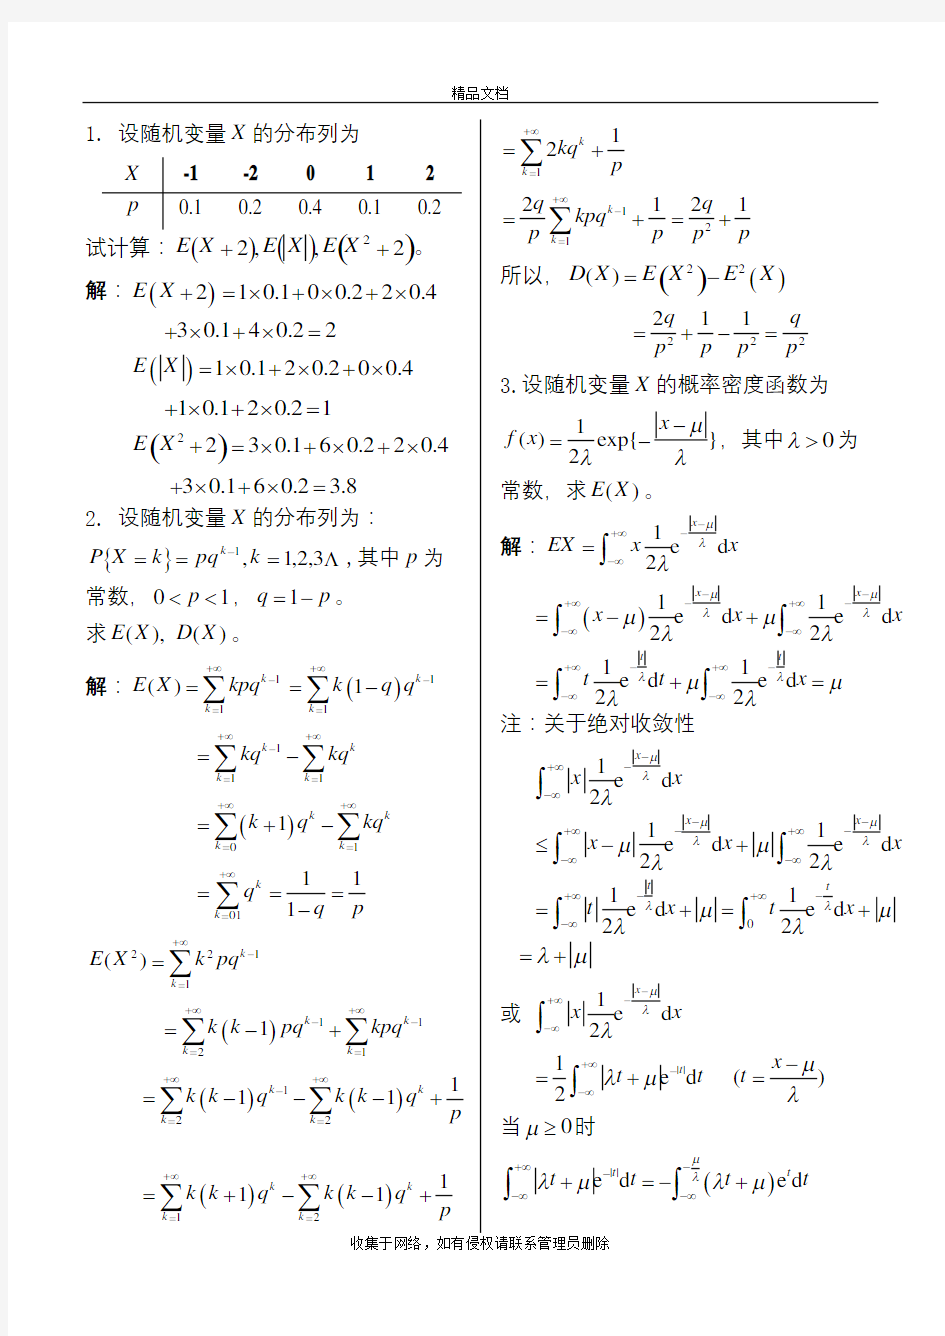 中北大学概率统计习题册第三章完整答案(详解)知识讲解